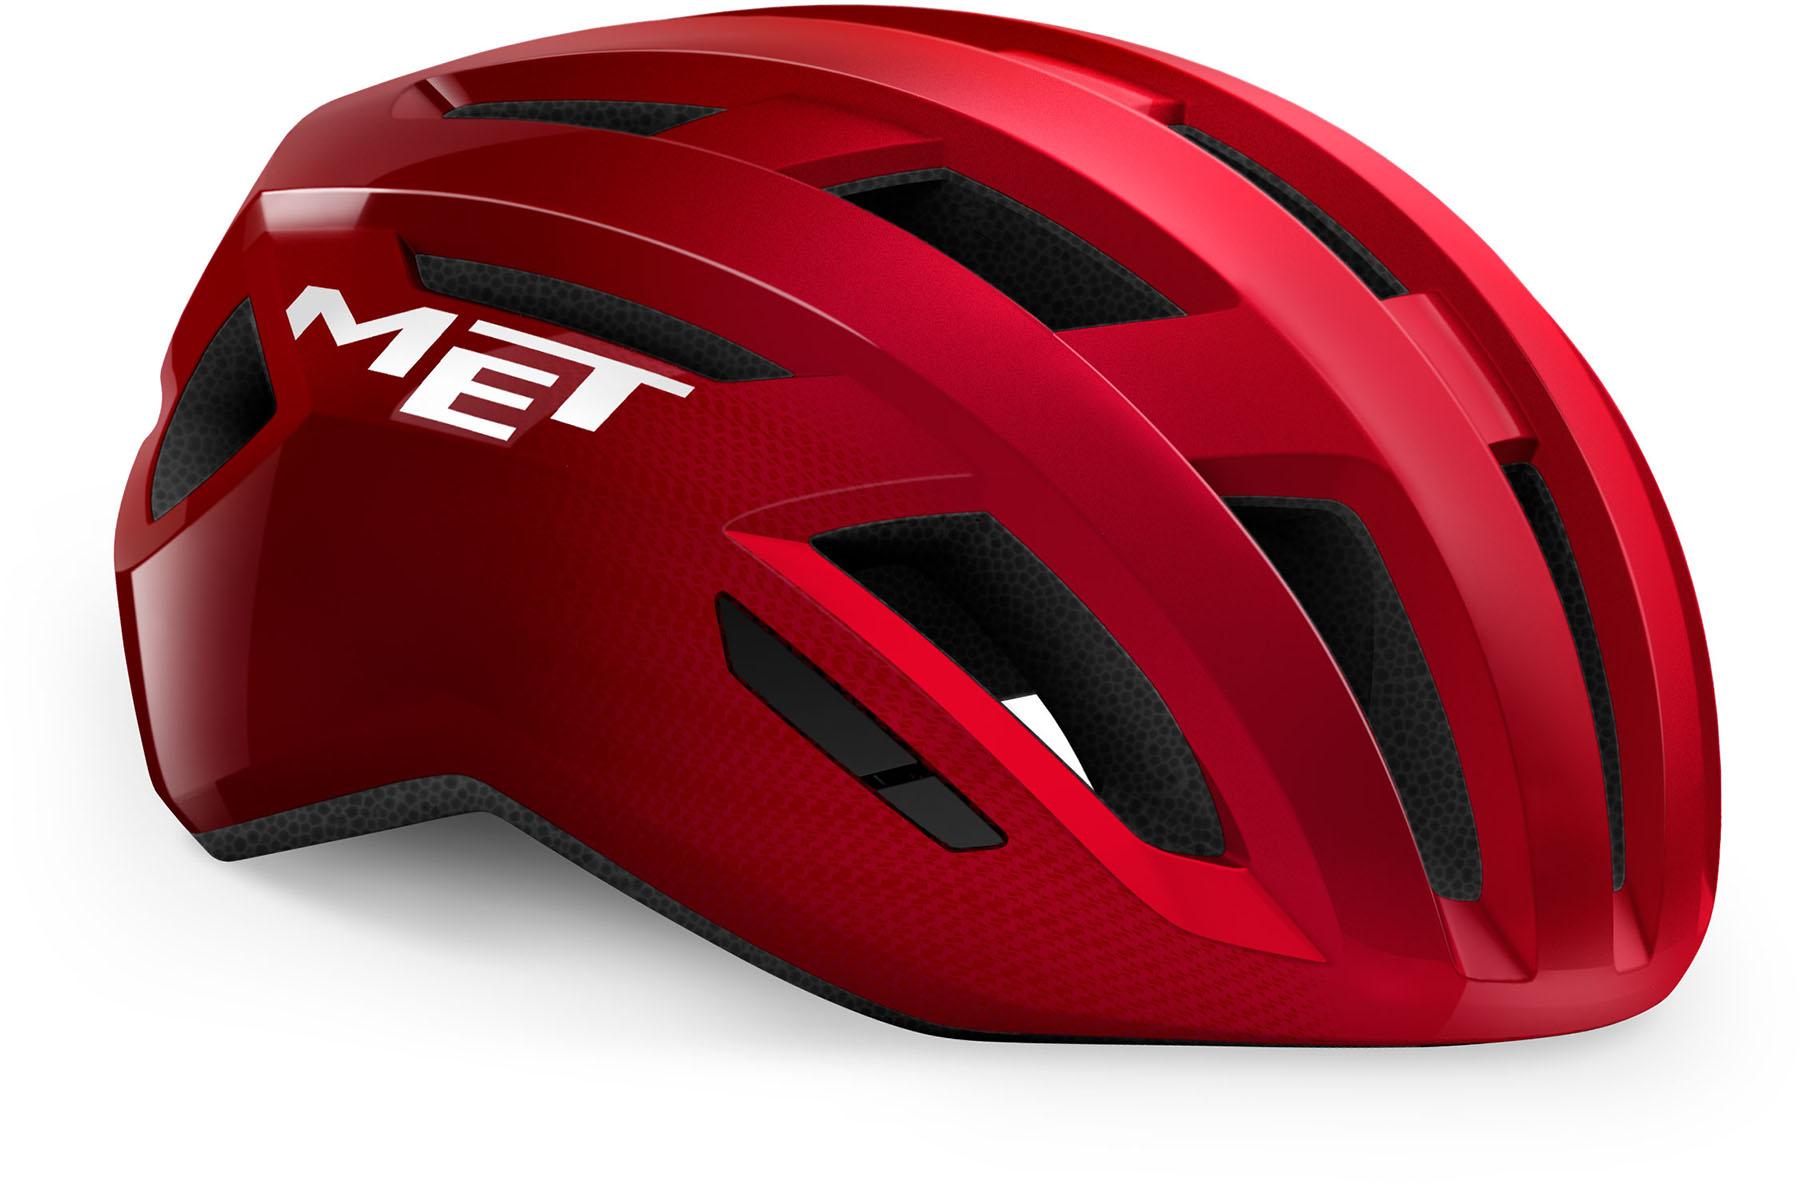 Met Vinci Road Helmet (mips) - Red Metallic/glossy